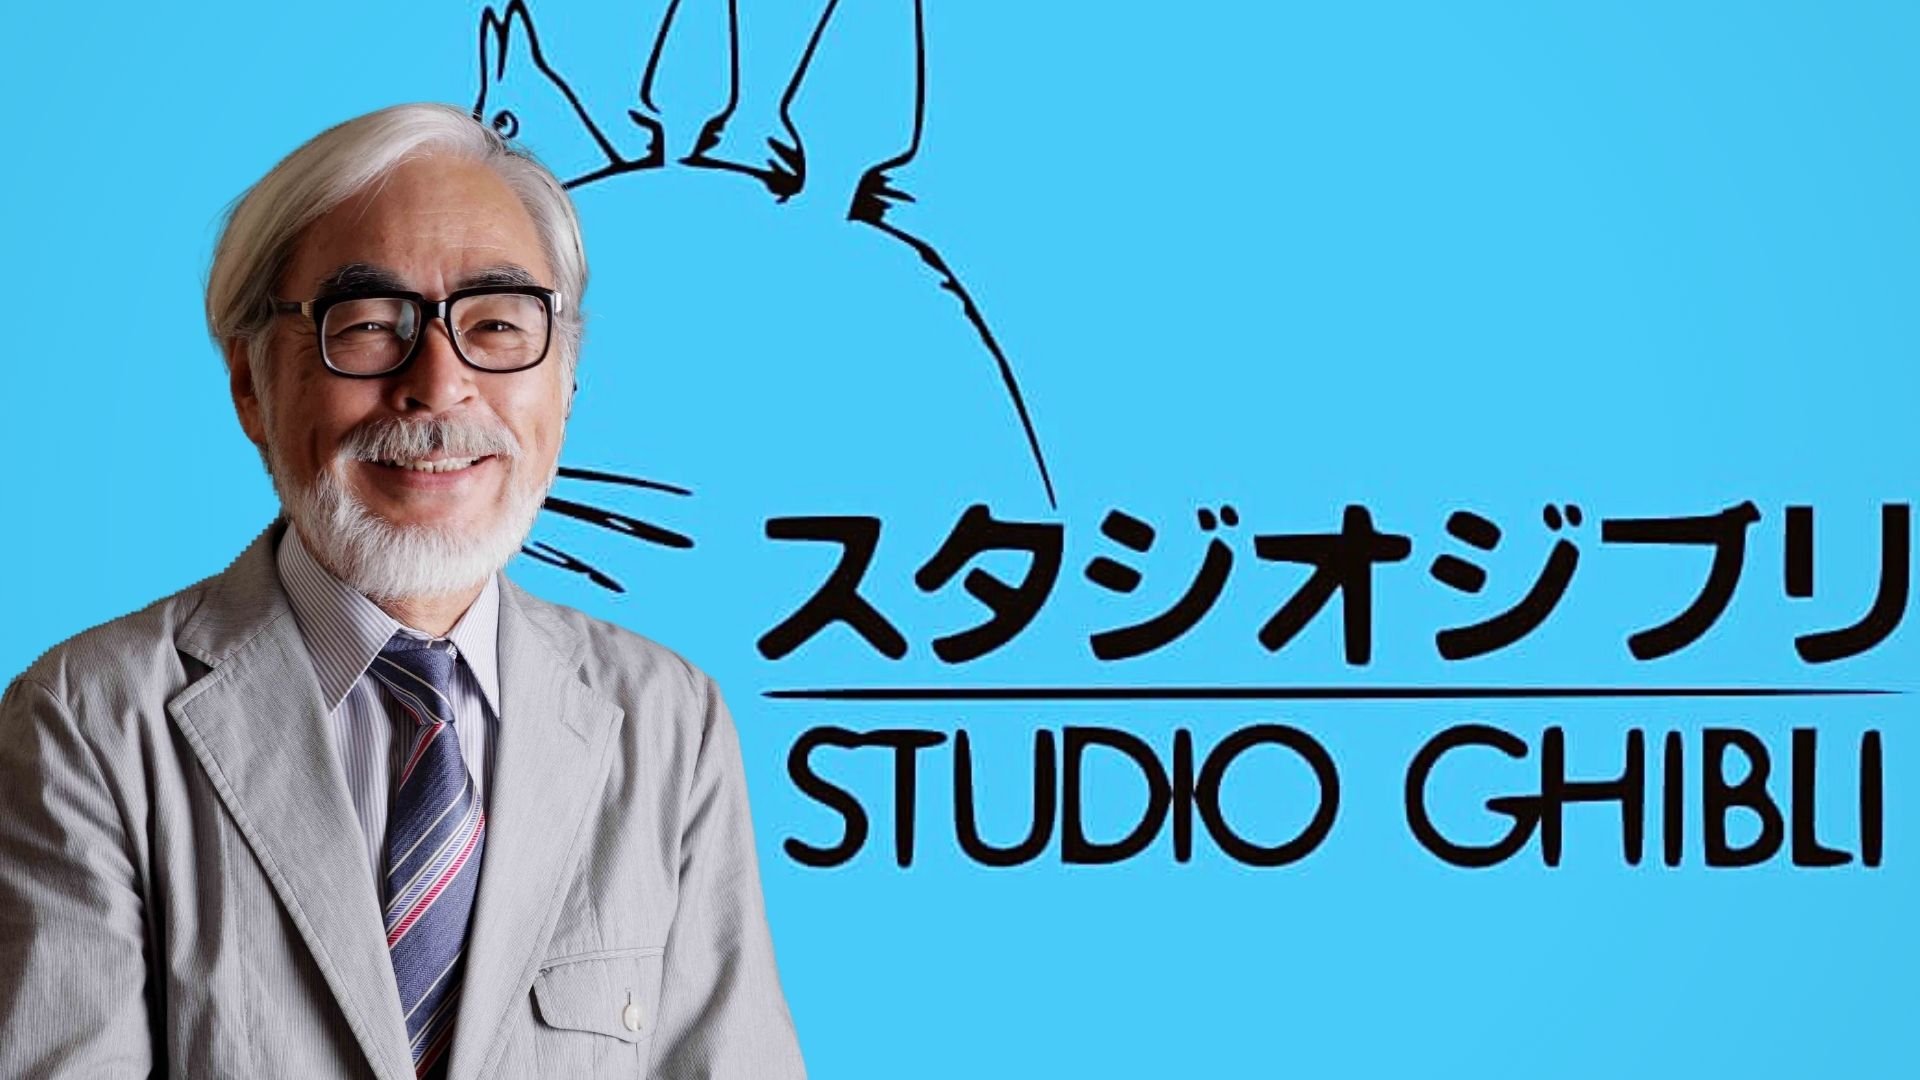 Le Studio Ghibli fait un choix exceptionnel pour la promo du dernier film d'Hayao Miyazaki